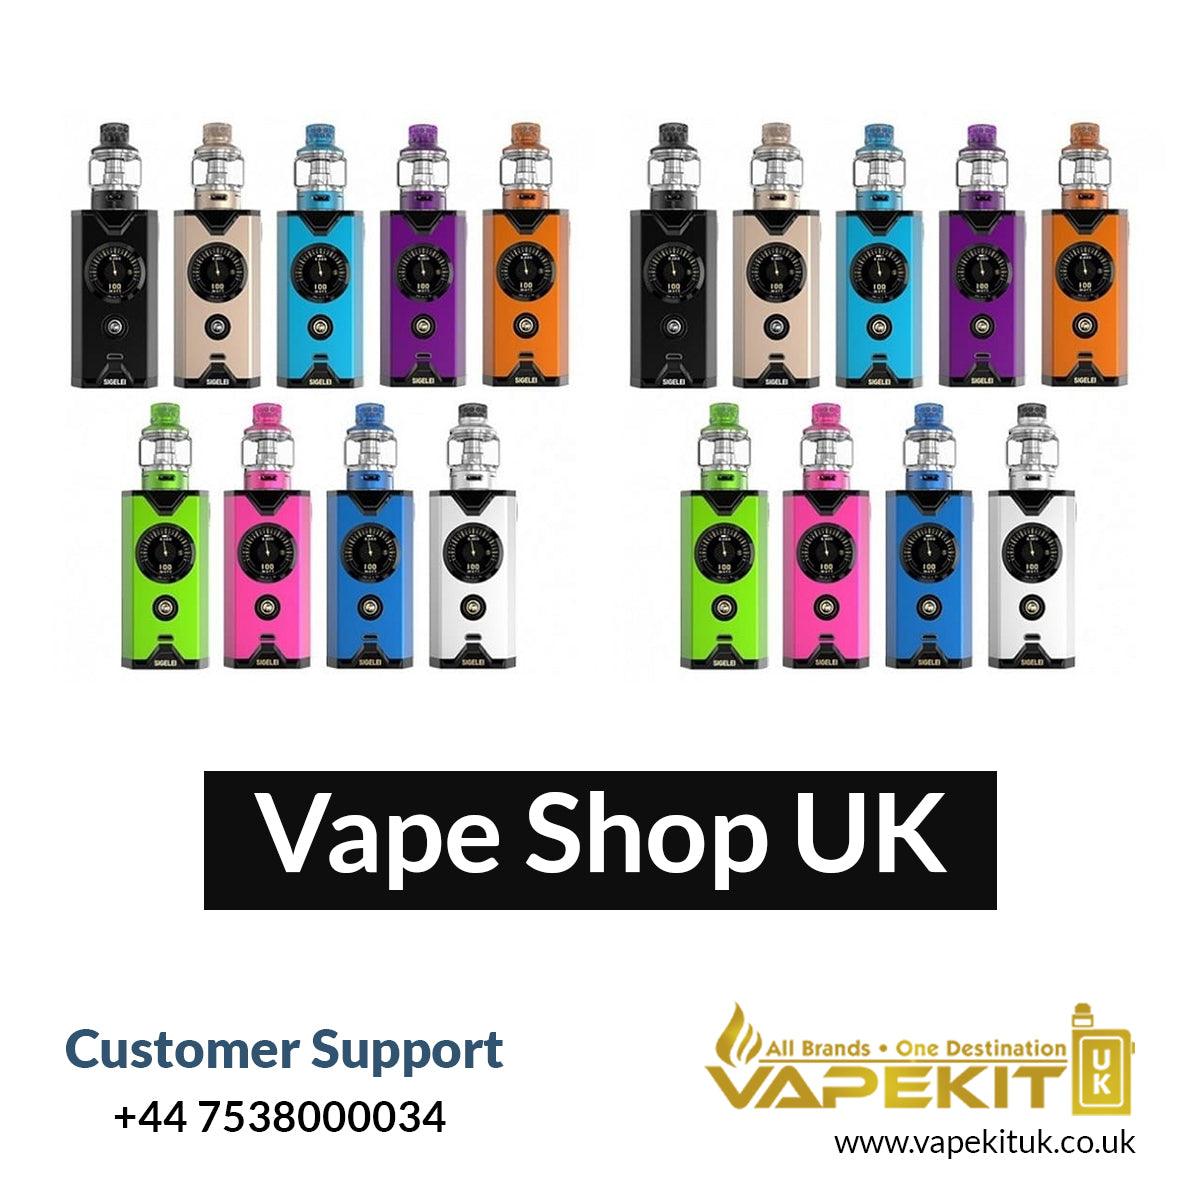 E-cigarette is the Best Alternative for Quitting Nicotine - Vape Store UK | Online Vape Shop | Disposable Vape Store | Ecig UK